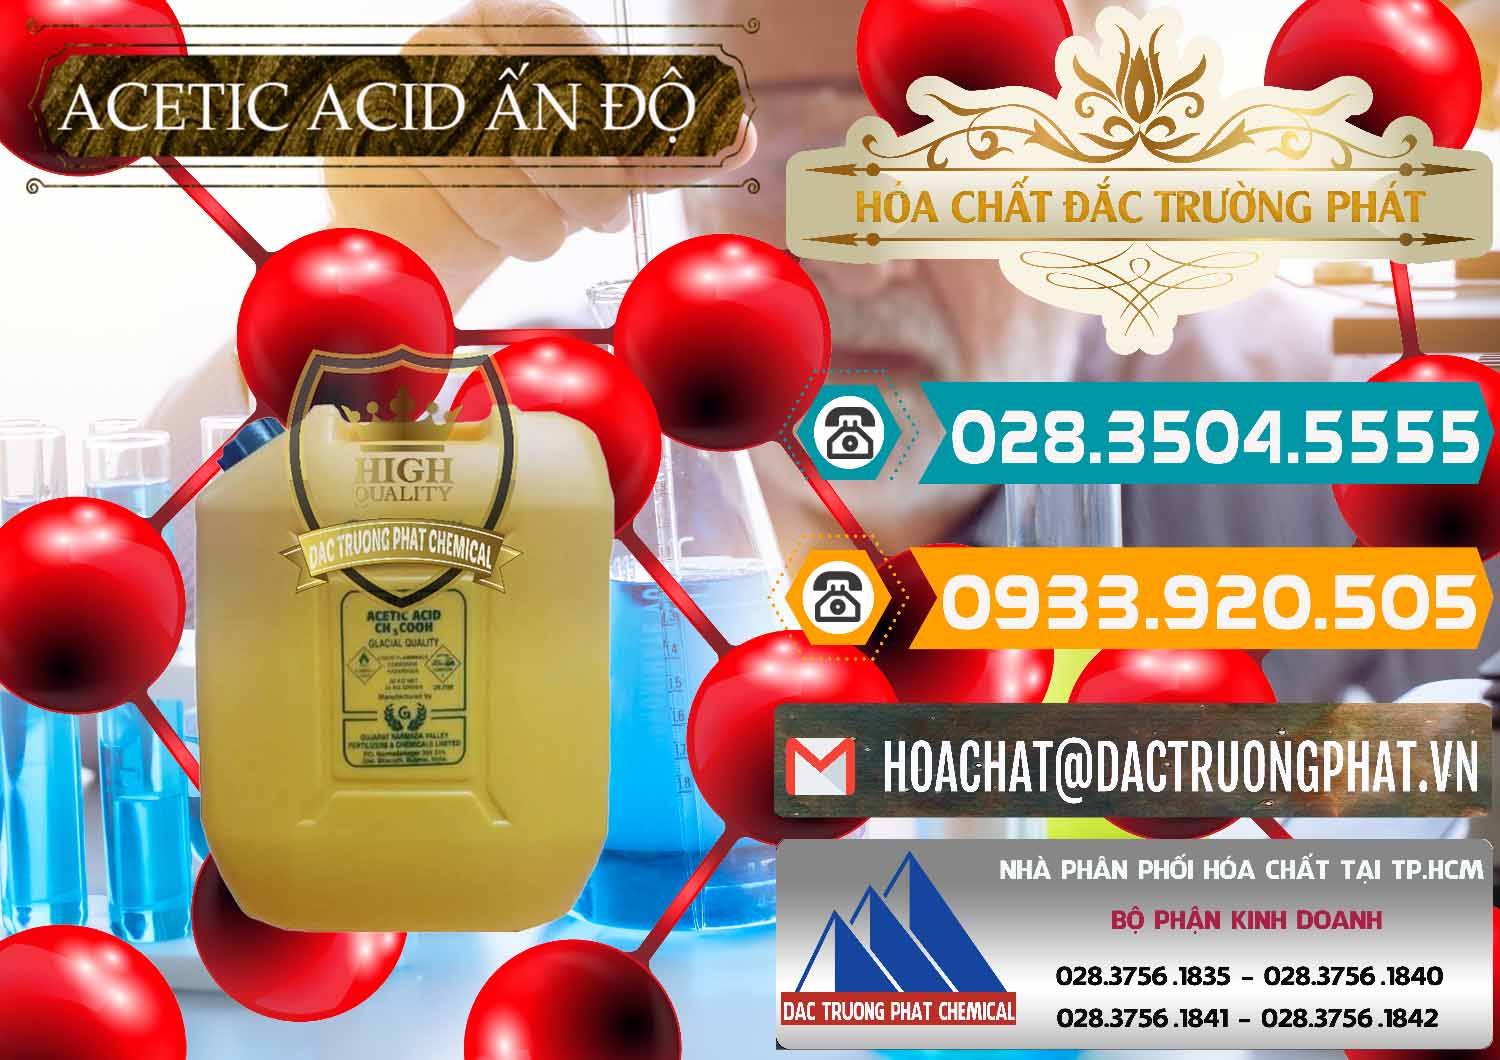 Cty chuyên cung ứng và bán Acetic Acid – Axit Acetic Ấn Độ India - 0359 - Công ty phân phối và cung cấp hóa chất tại TP.HCM - congtyhoachat.vn